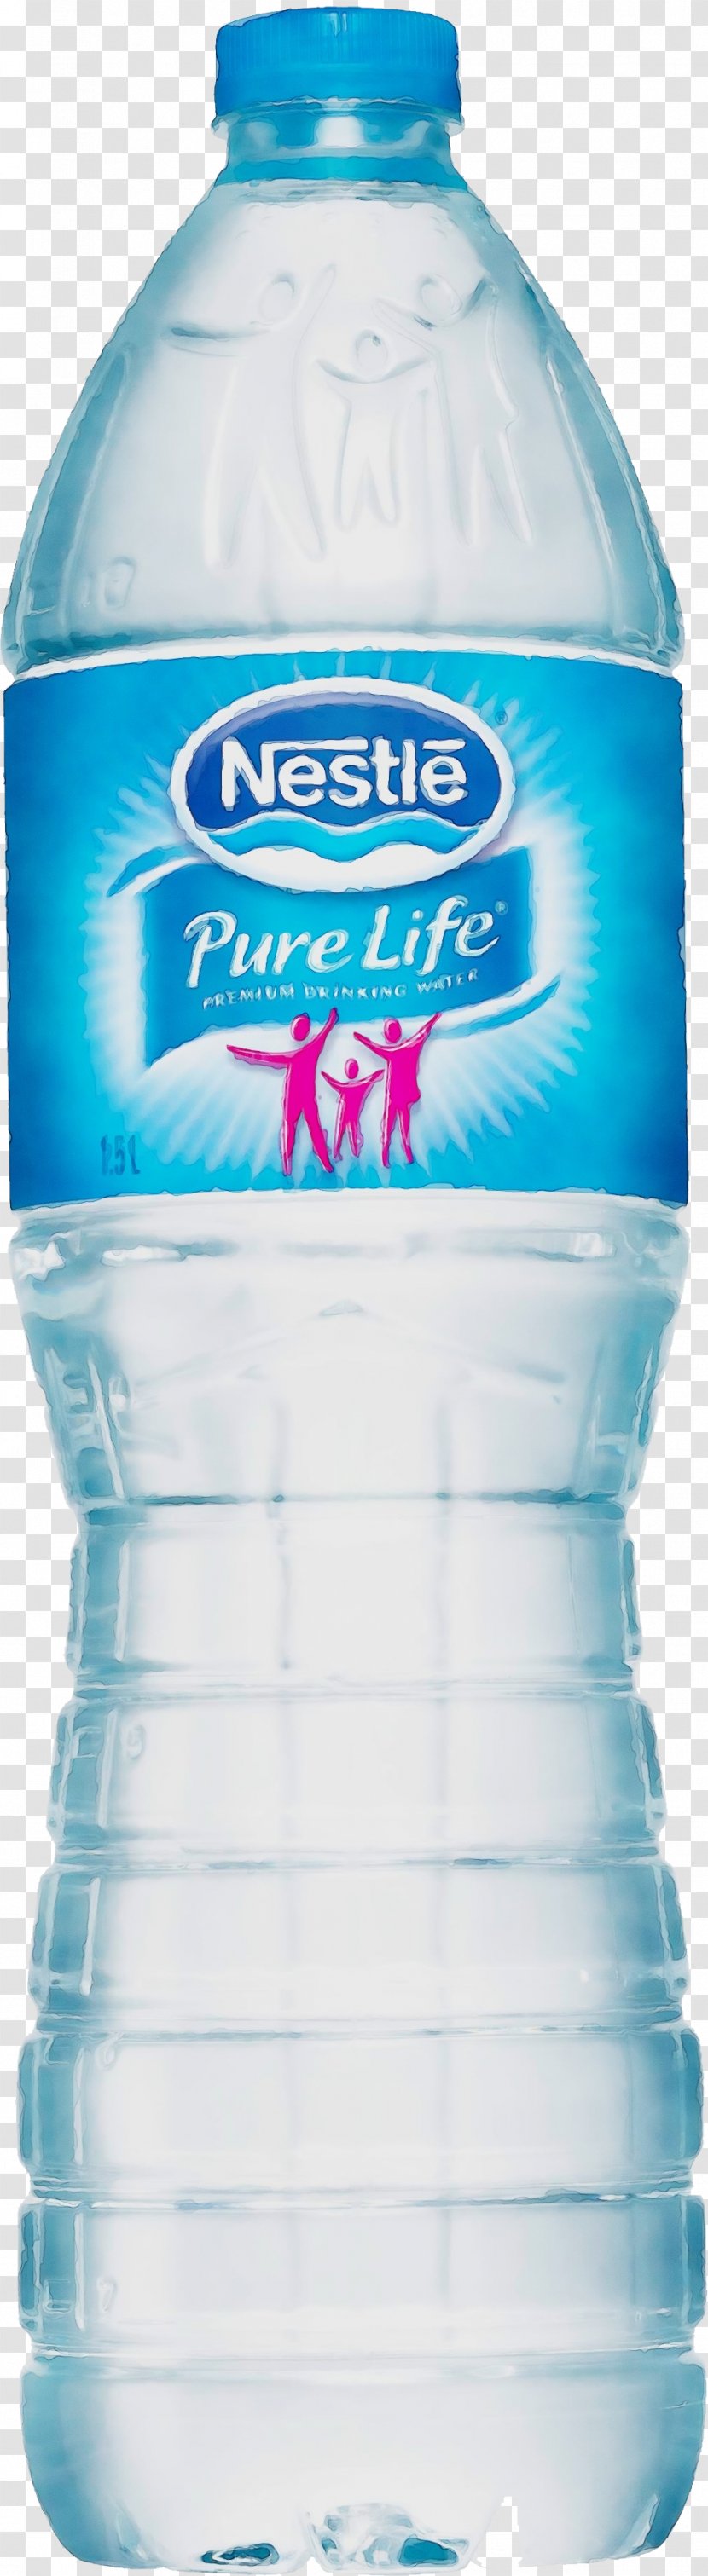 Plastic Bottle - Drink - Sports Distilled Water Transparent PNG